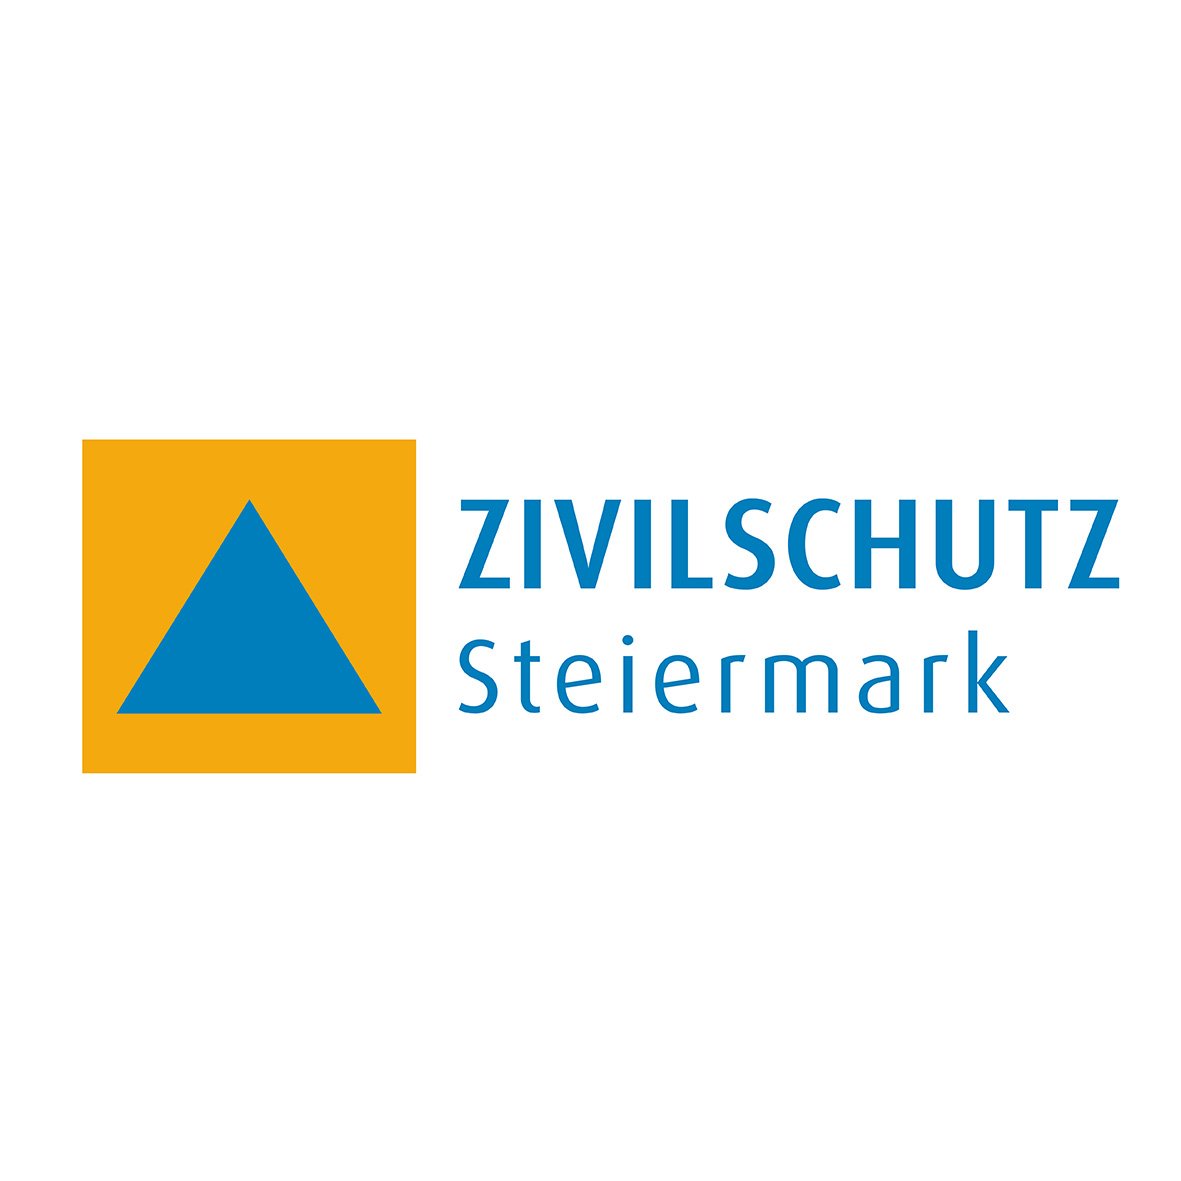 tag_im_bad_zivilschutz_logo.jpg